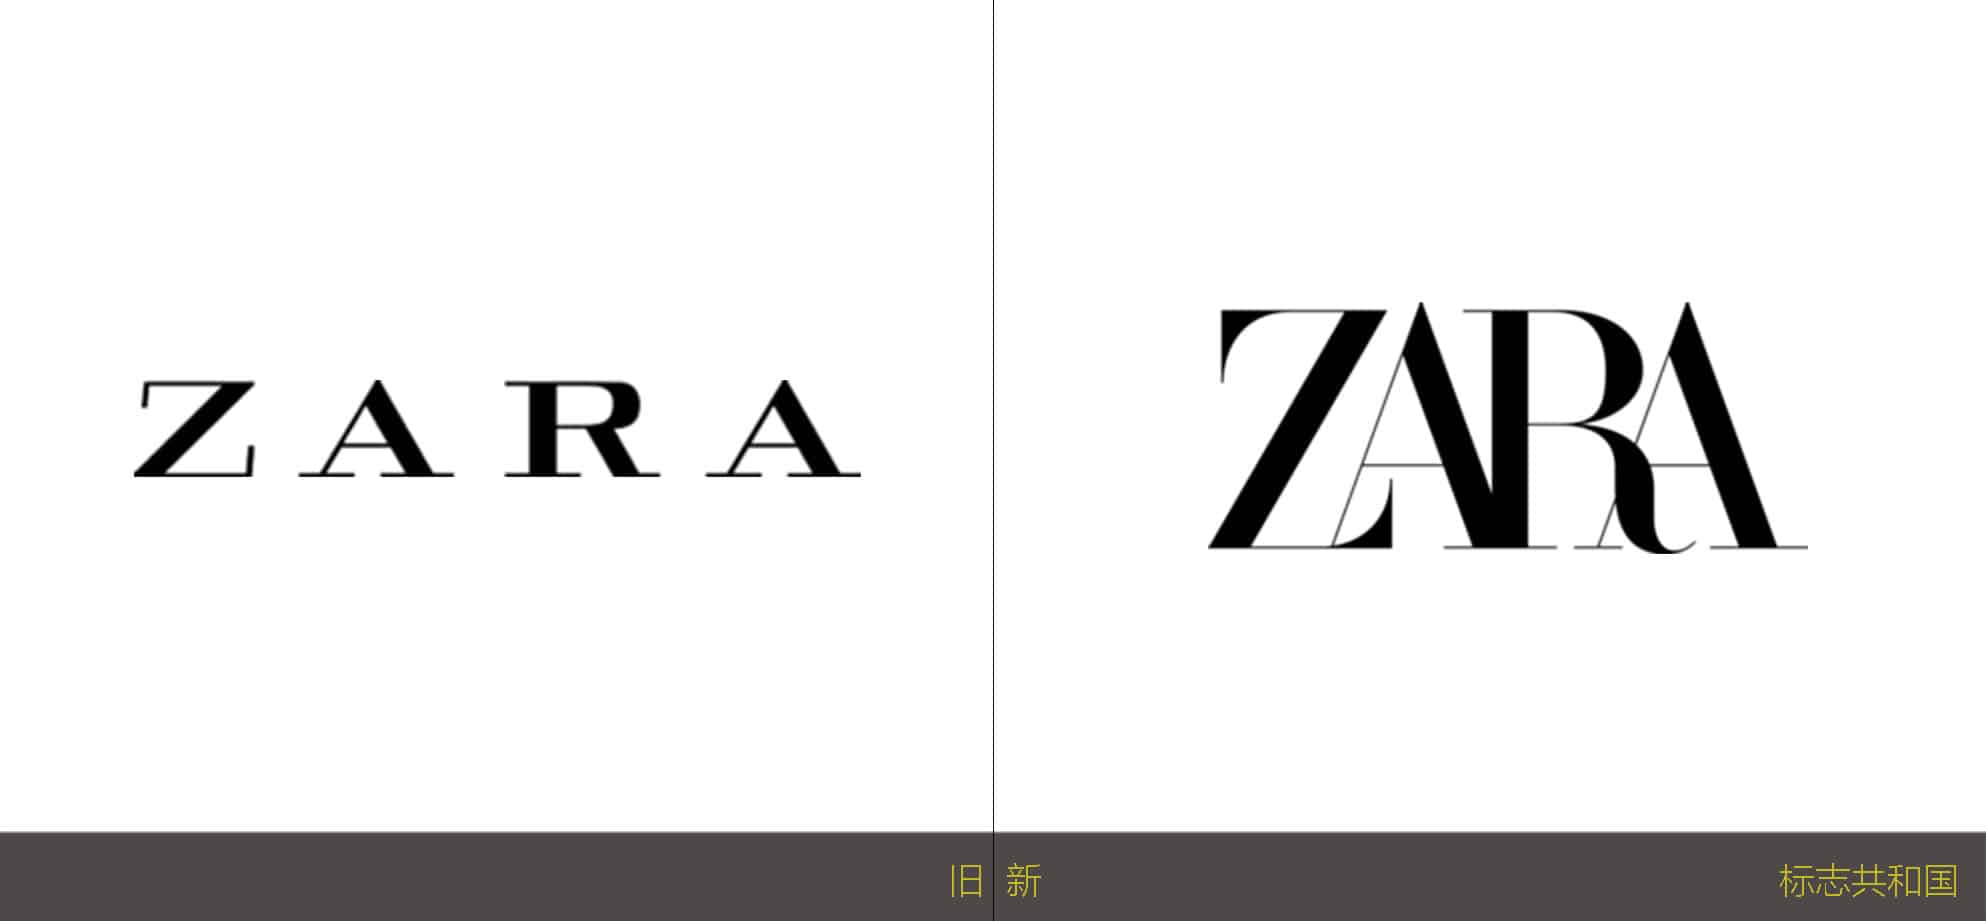 服装 快时尚品牌Zara更新了LOGO